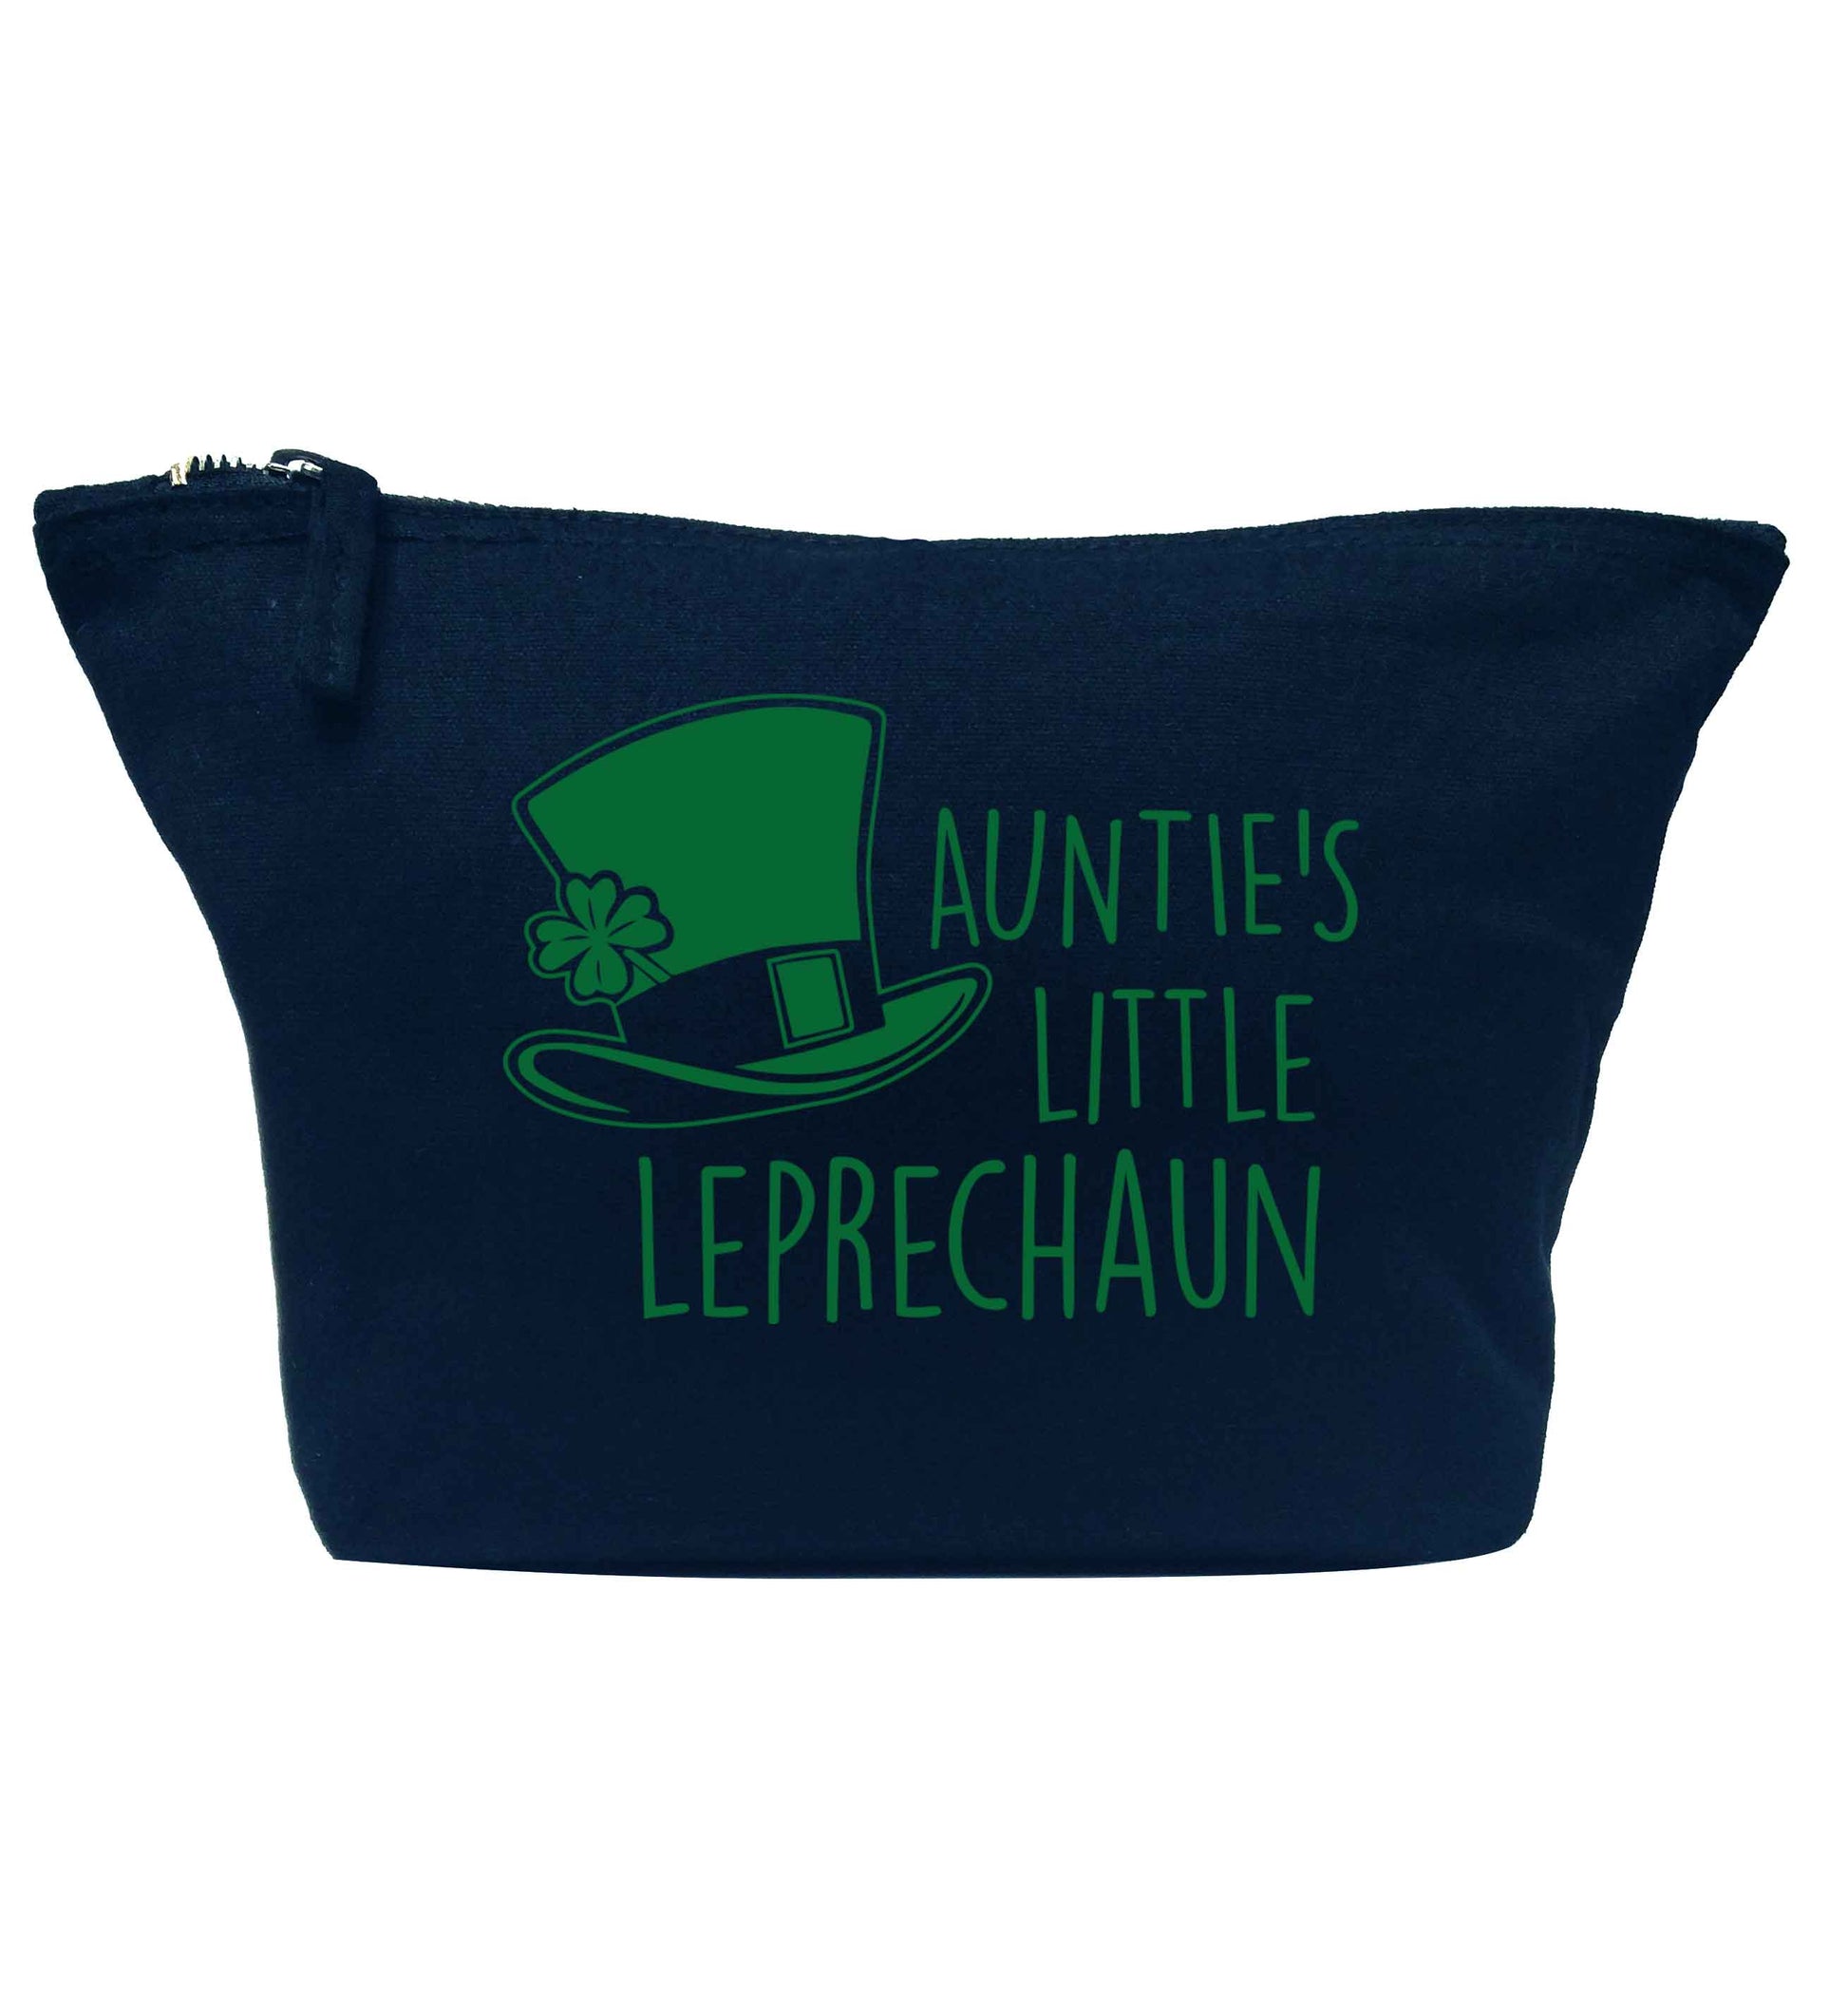 Auntie's little leprechaun navy makeup bag